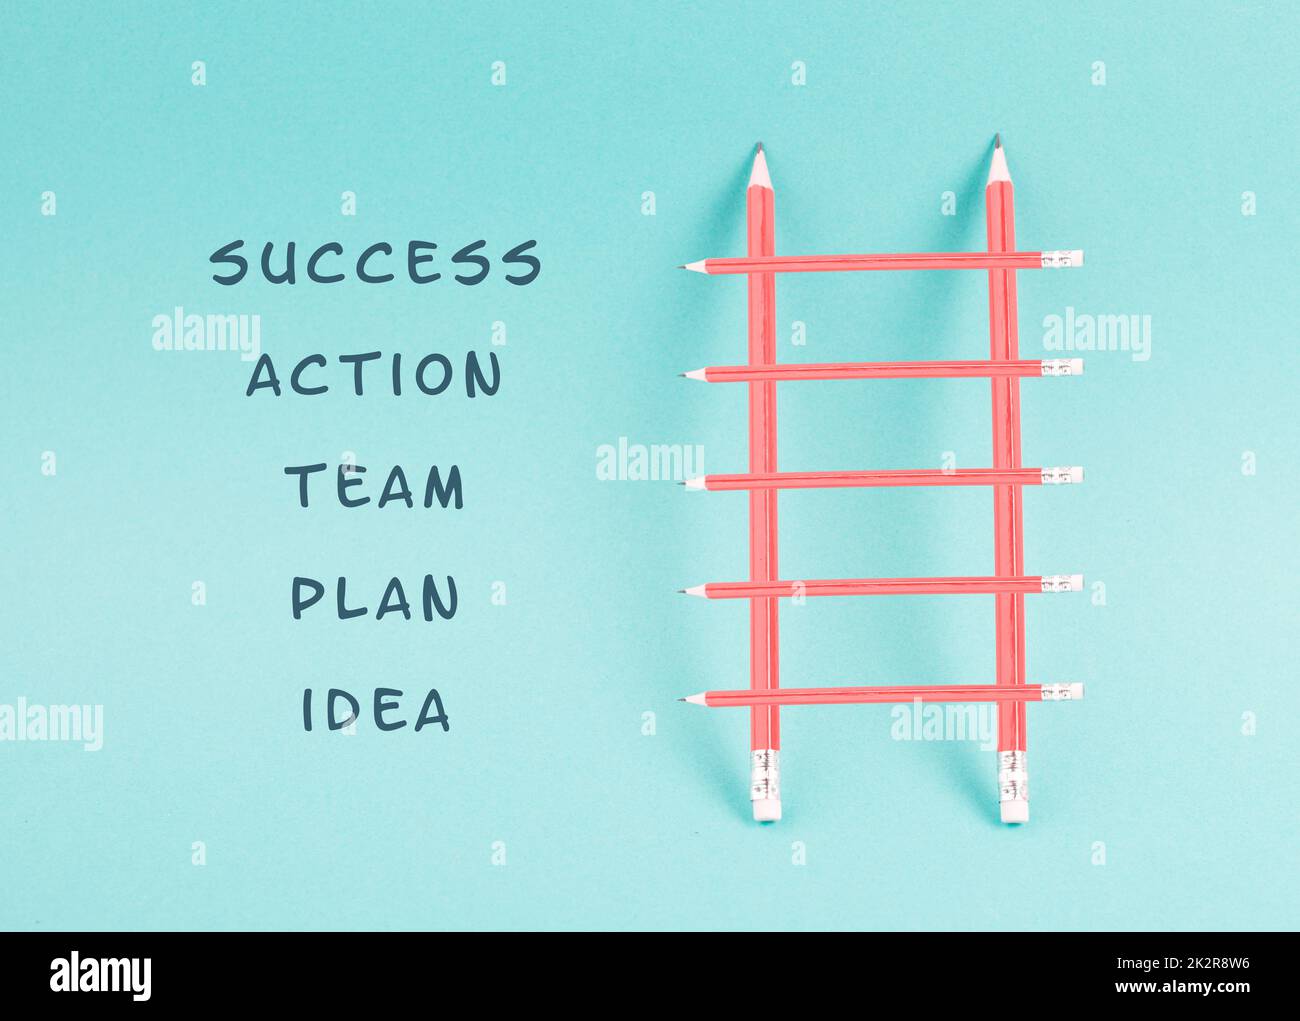 Leiter des Erfolgs,eine Idee haben, eine Strategie planen, Teamarbeit für den Erfolg Schritt für Schritt Konzept, Fortschritte in der Wirtschaft und Bildung, haben ein Ziel Stockfoto